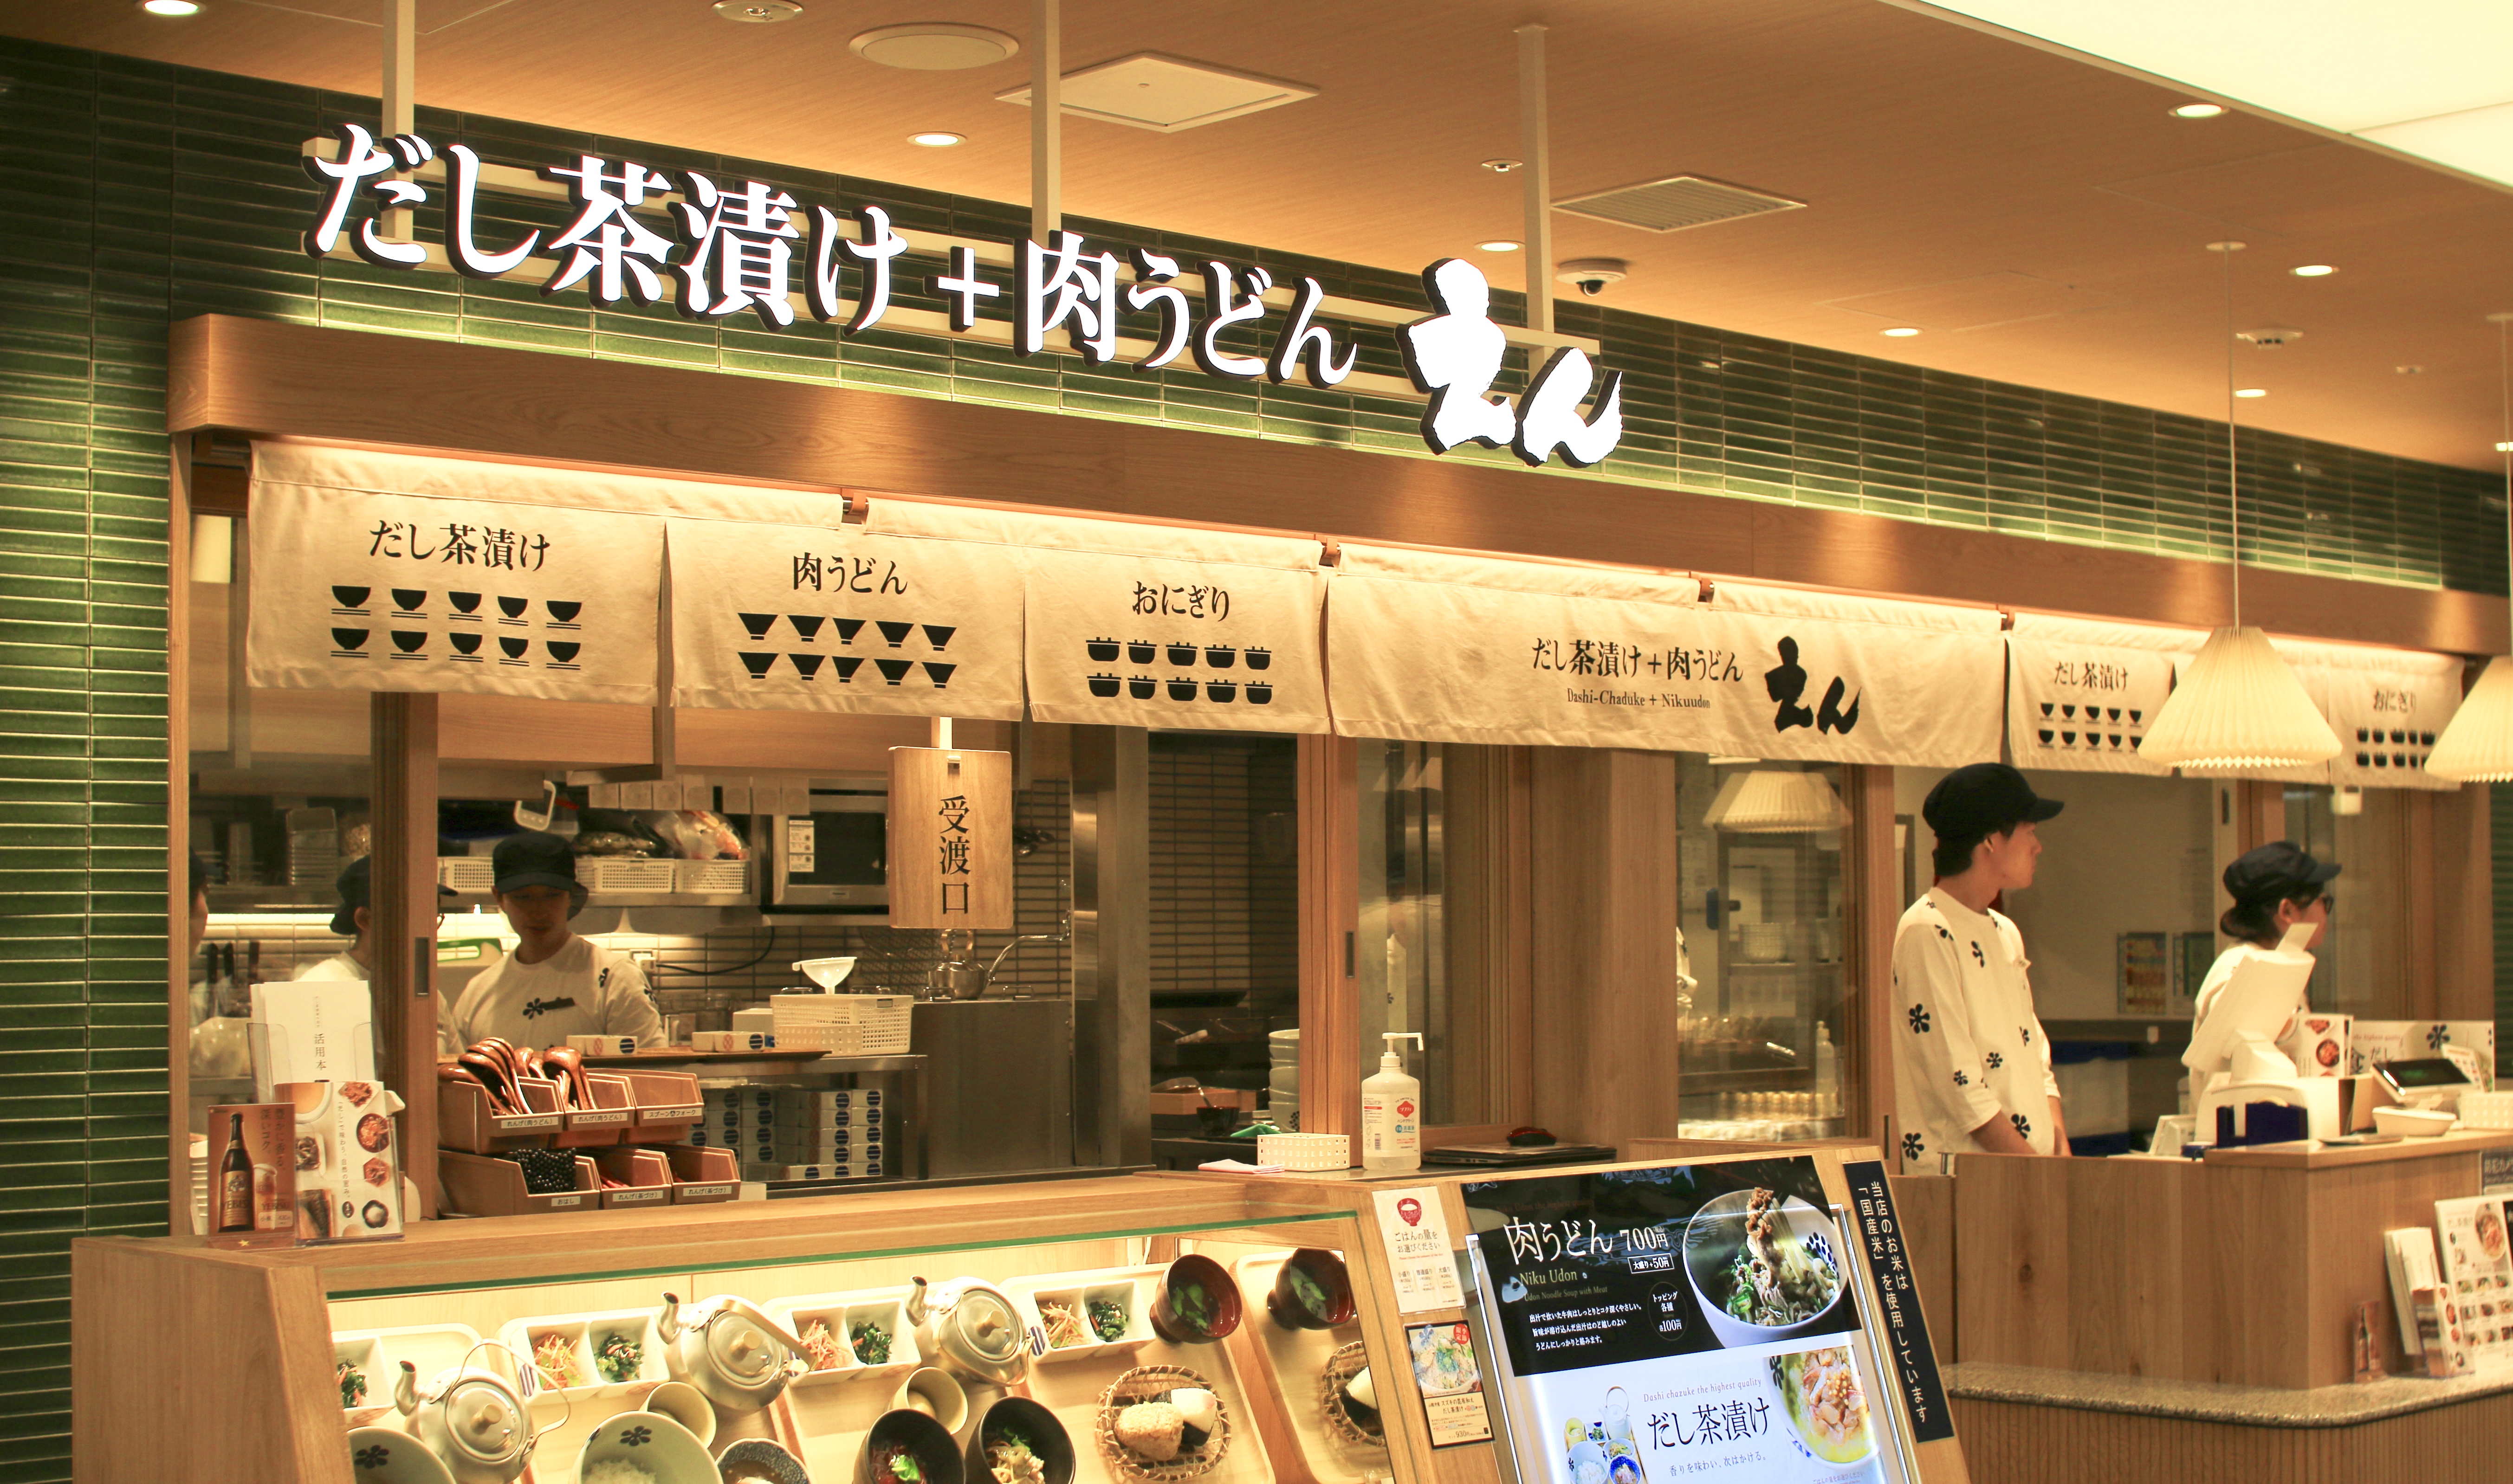 名古屋駅直結 タワーズプラザ レストラン街 がリニューアル 東海初出店のお店が続々オープン Identity 名古屋